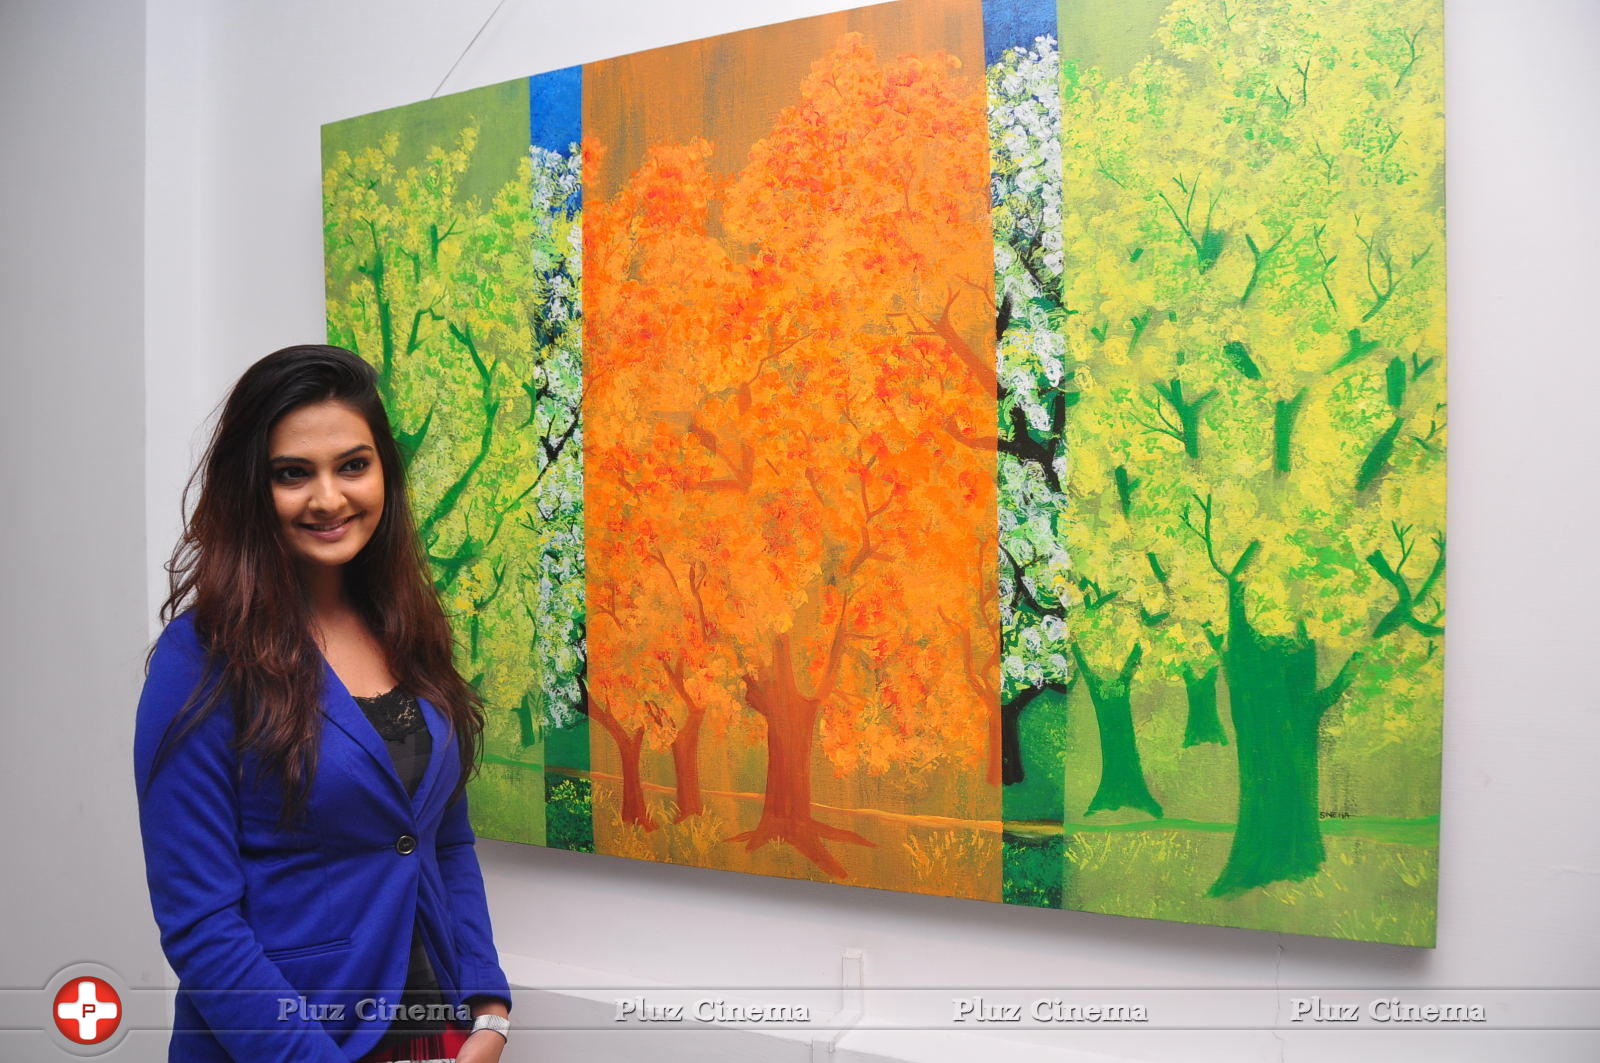 Neha Deshpande - Dil Deewana Team at Romanticize Nature Art Exhibition Pictures | Picture 676200